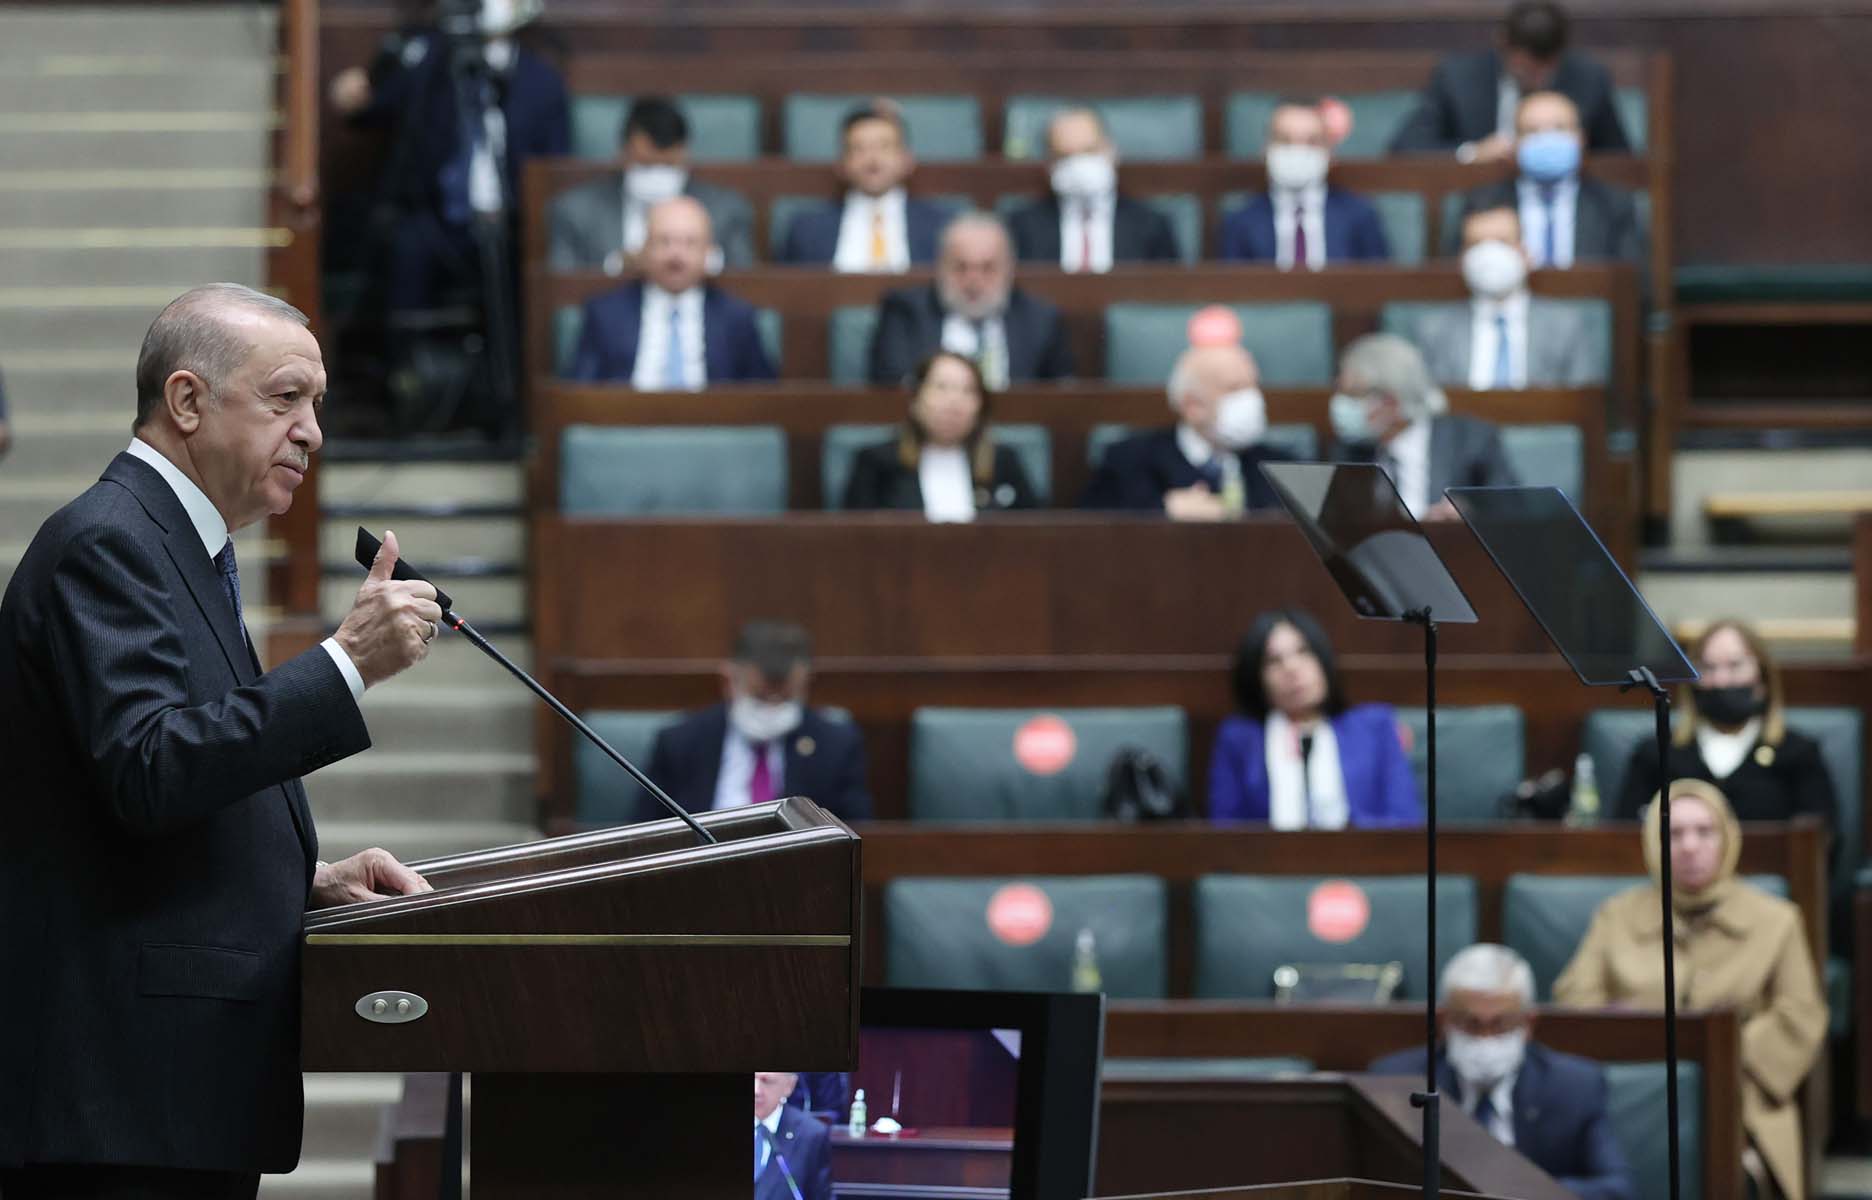  Cumhurbaşkanı Erdoğan, AK Parti Grup Toplantısı'nda konuştu: 28 Şubat ittifakı Allah'ın izniyle 2023'ü bile göremeyecek